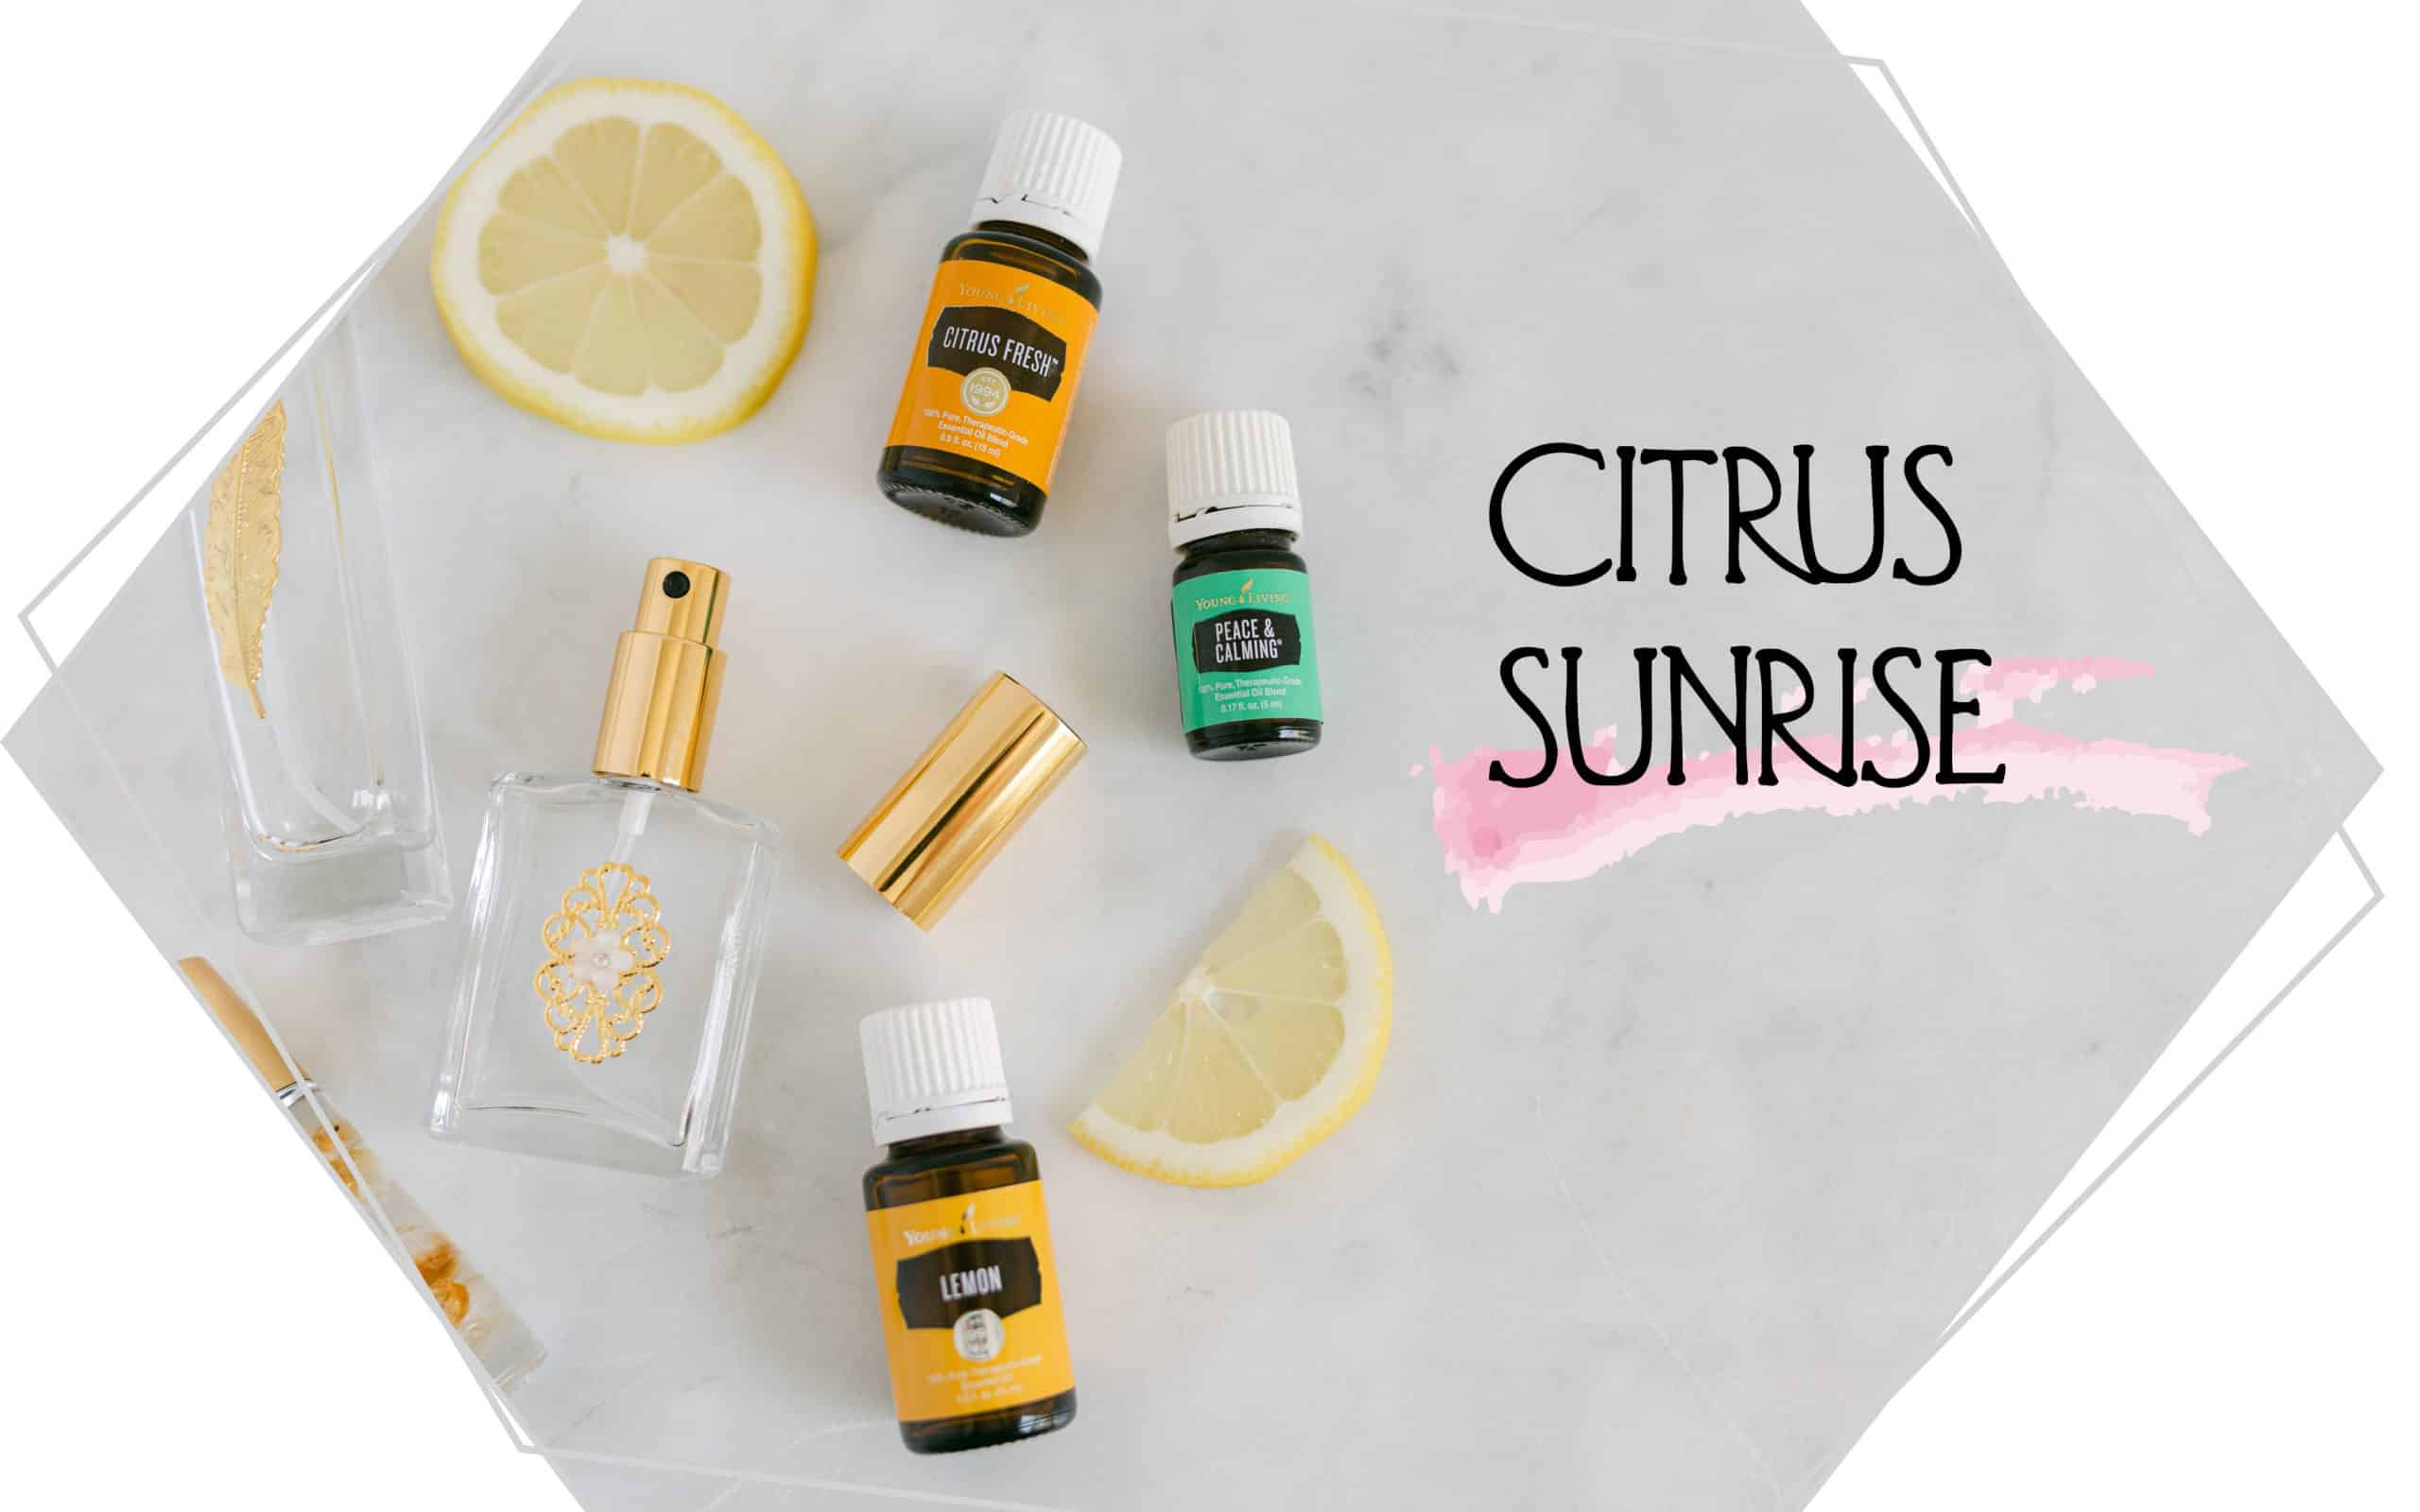 Citrus Sunrise essential oil bottles. 